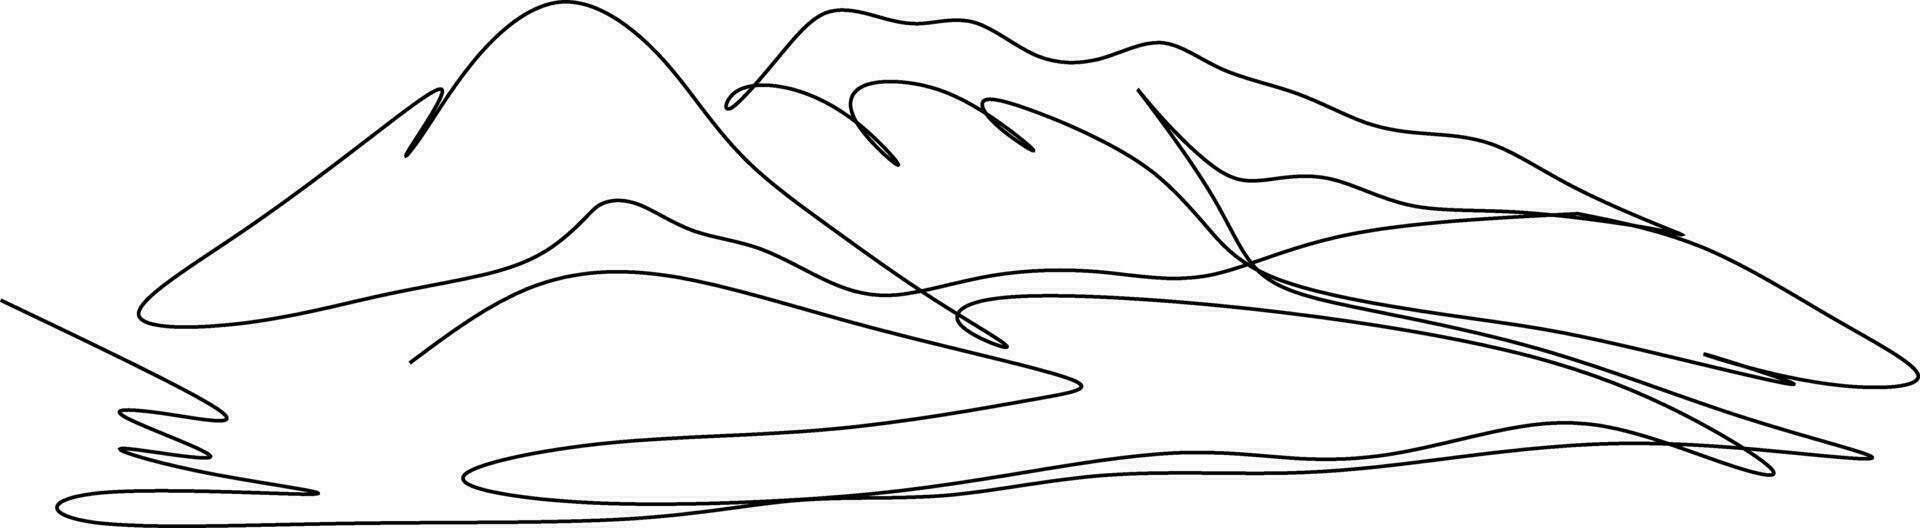 de illustraties en clip art. hand getekend illustratie van een berg en bomen vector